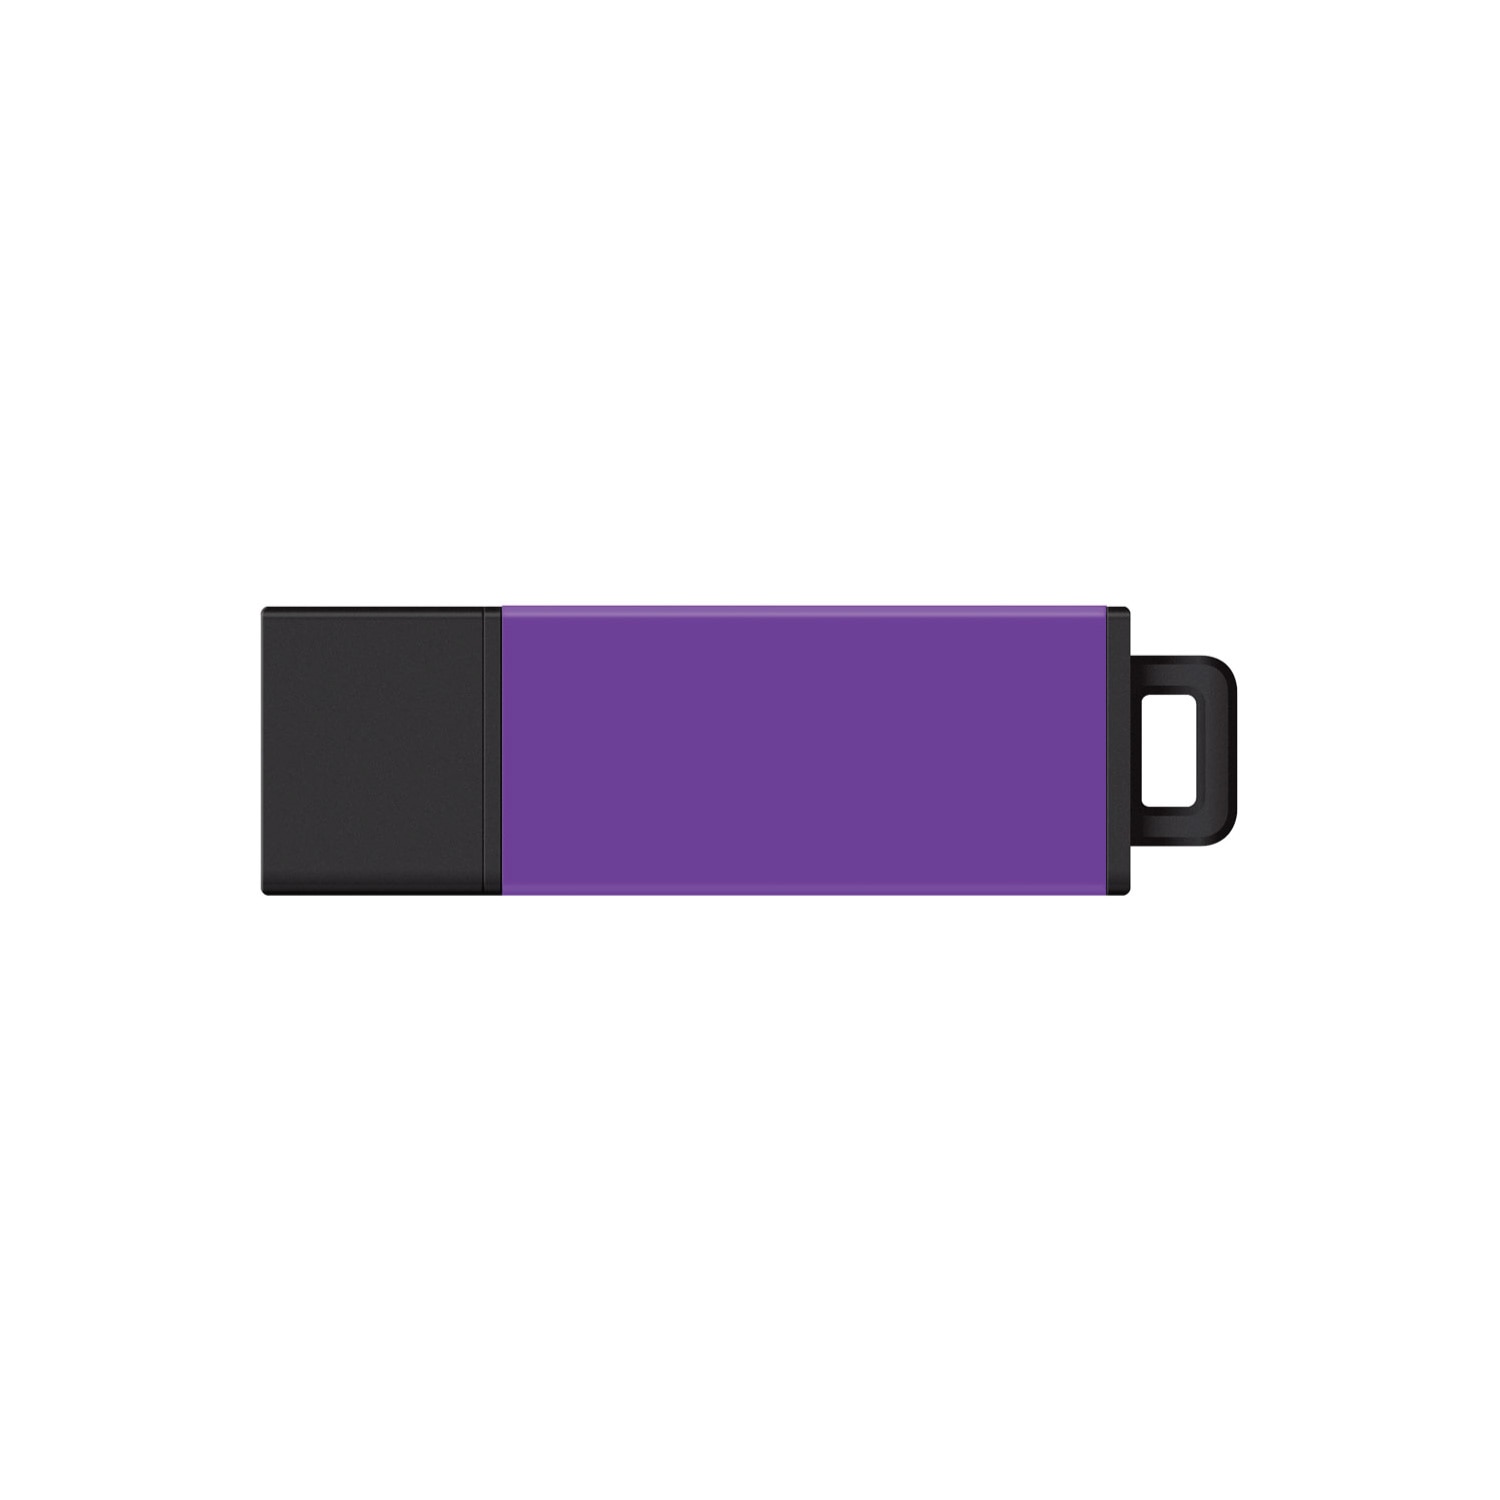 DataStick Pro2 USB 3.0, 32GB- Purple